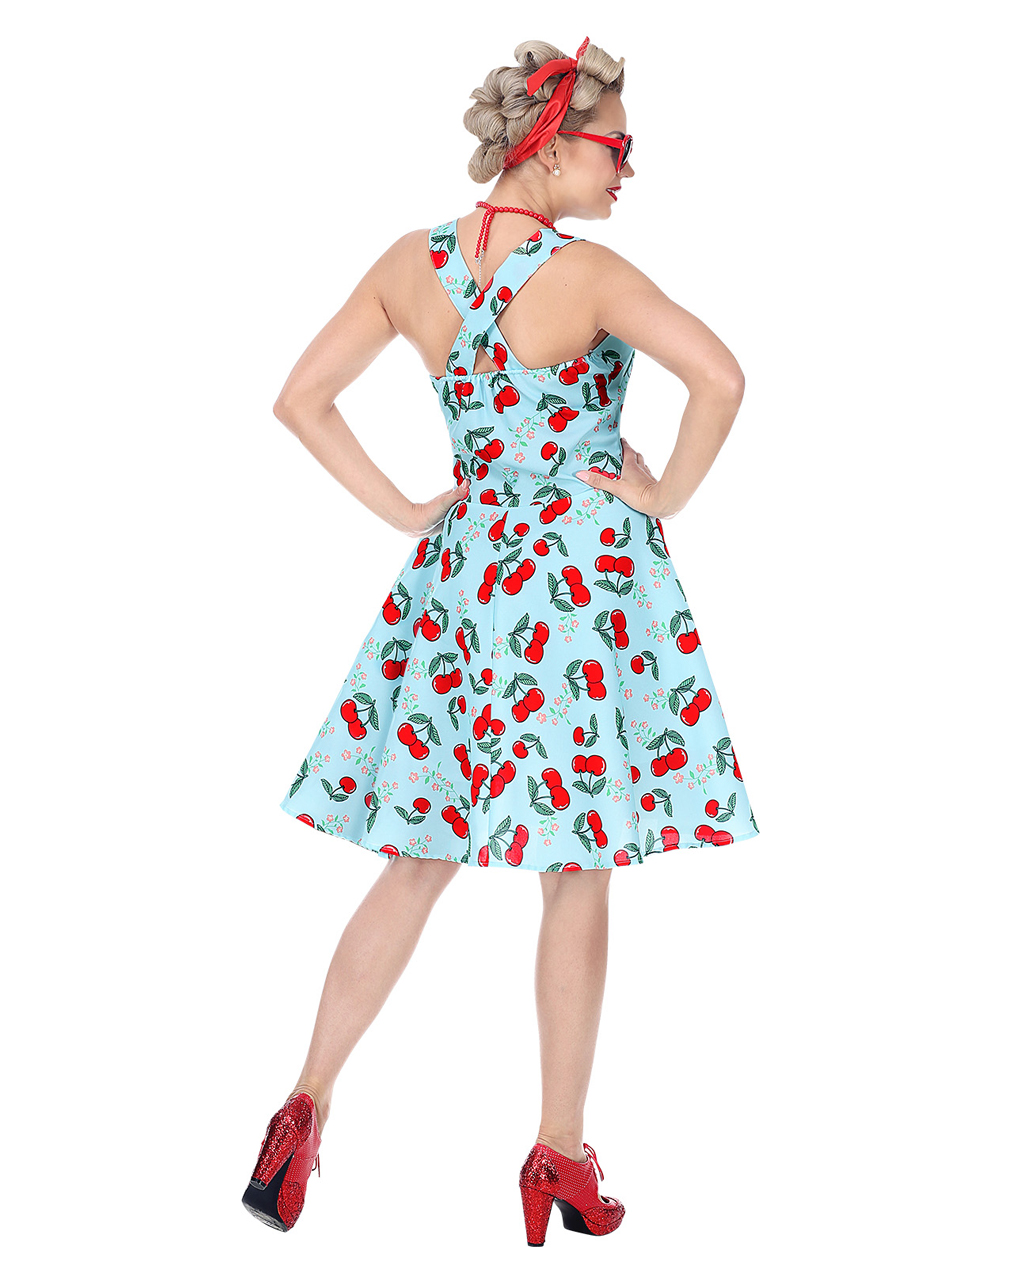 Damen Kostüm Kirschen blau #4833 M 50er Jahre Rockabilly Petticoat Kleid 38/40